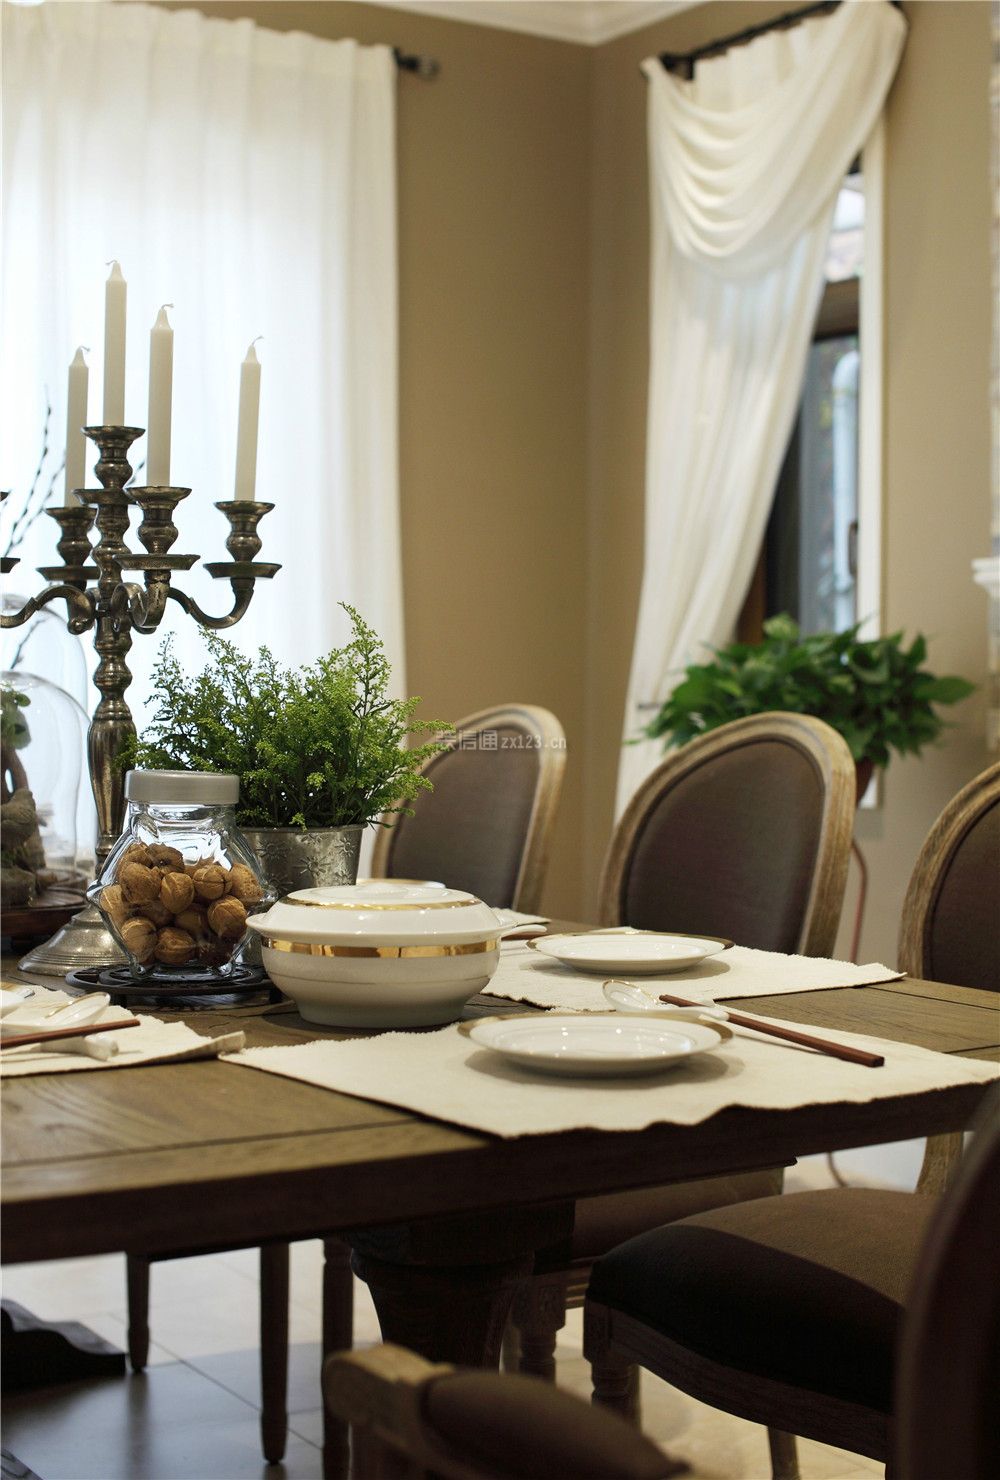 欧美风格105平米三居餐厅餐桌设计效果图片